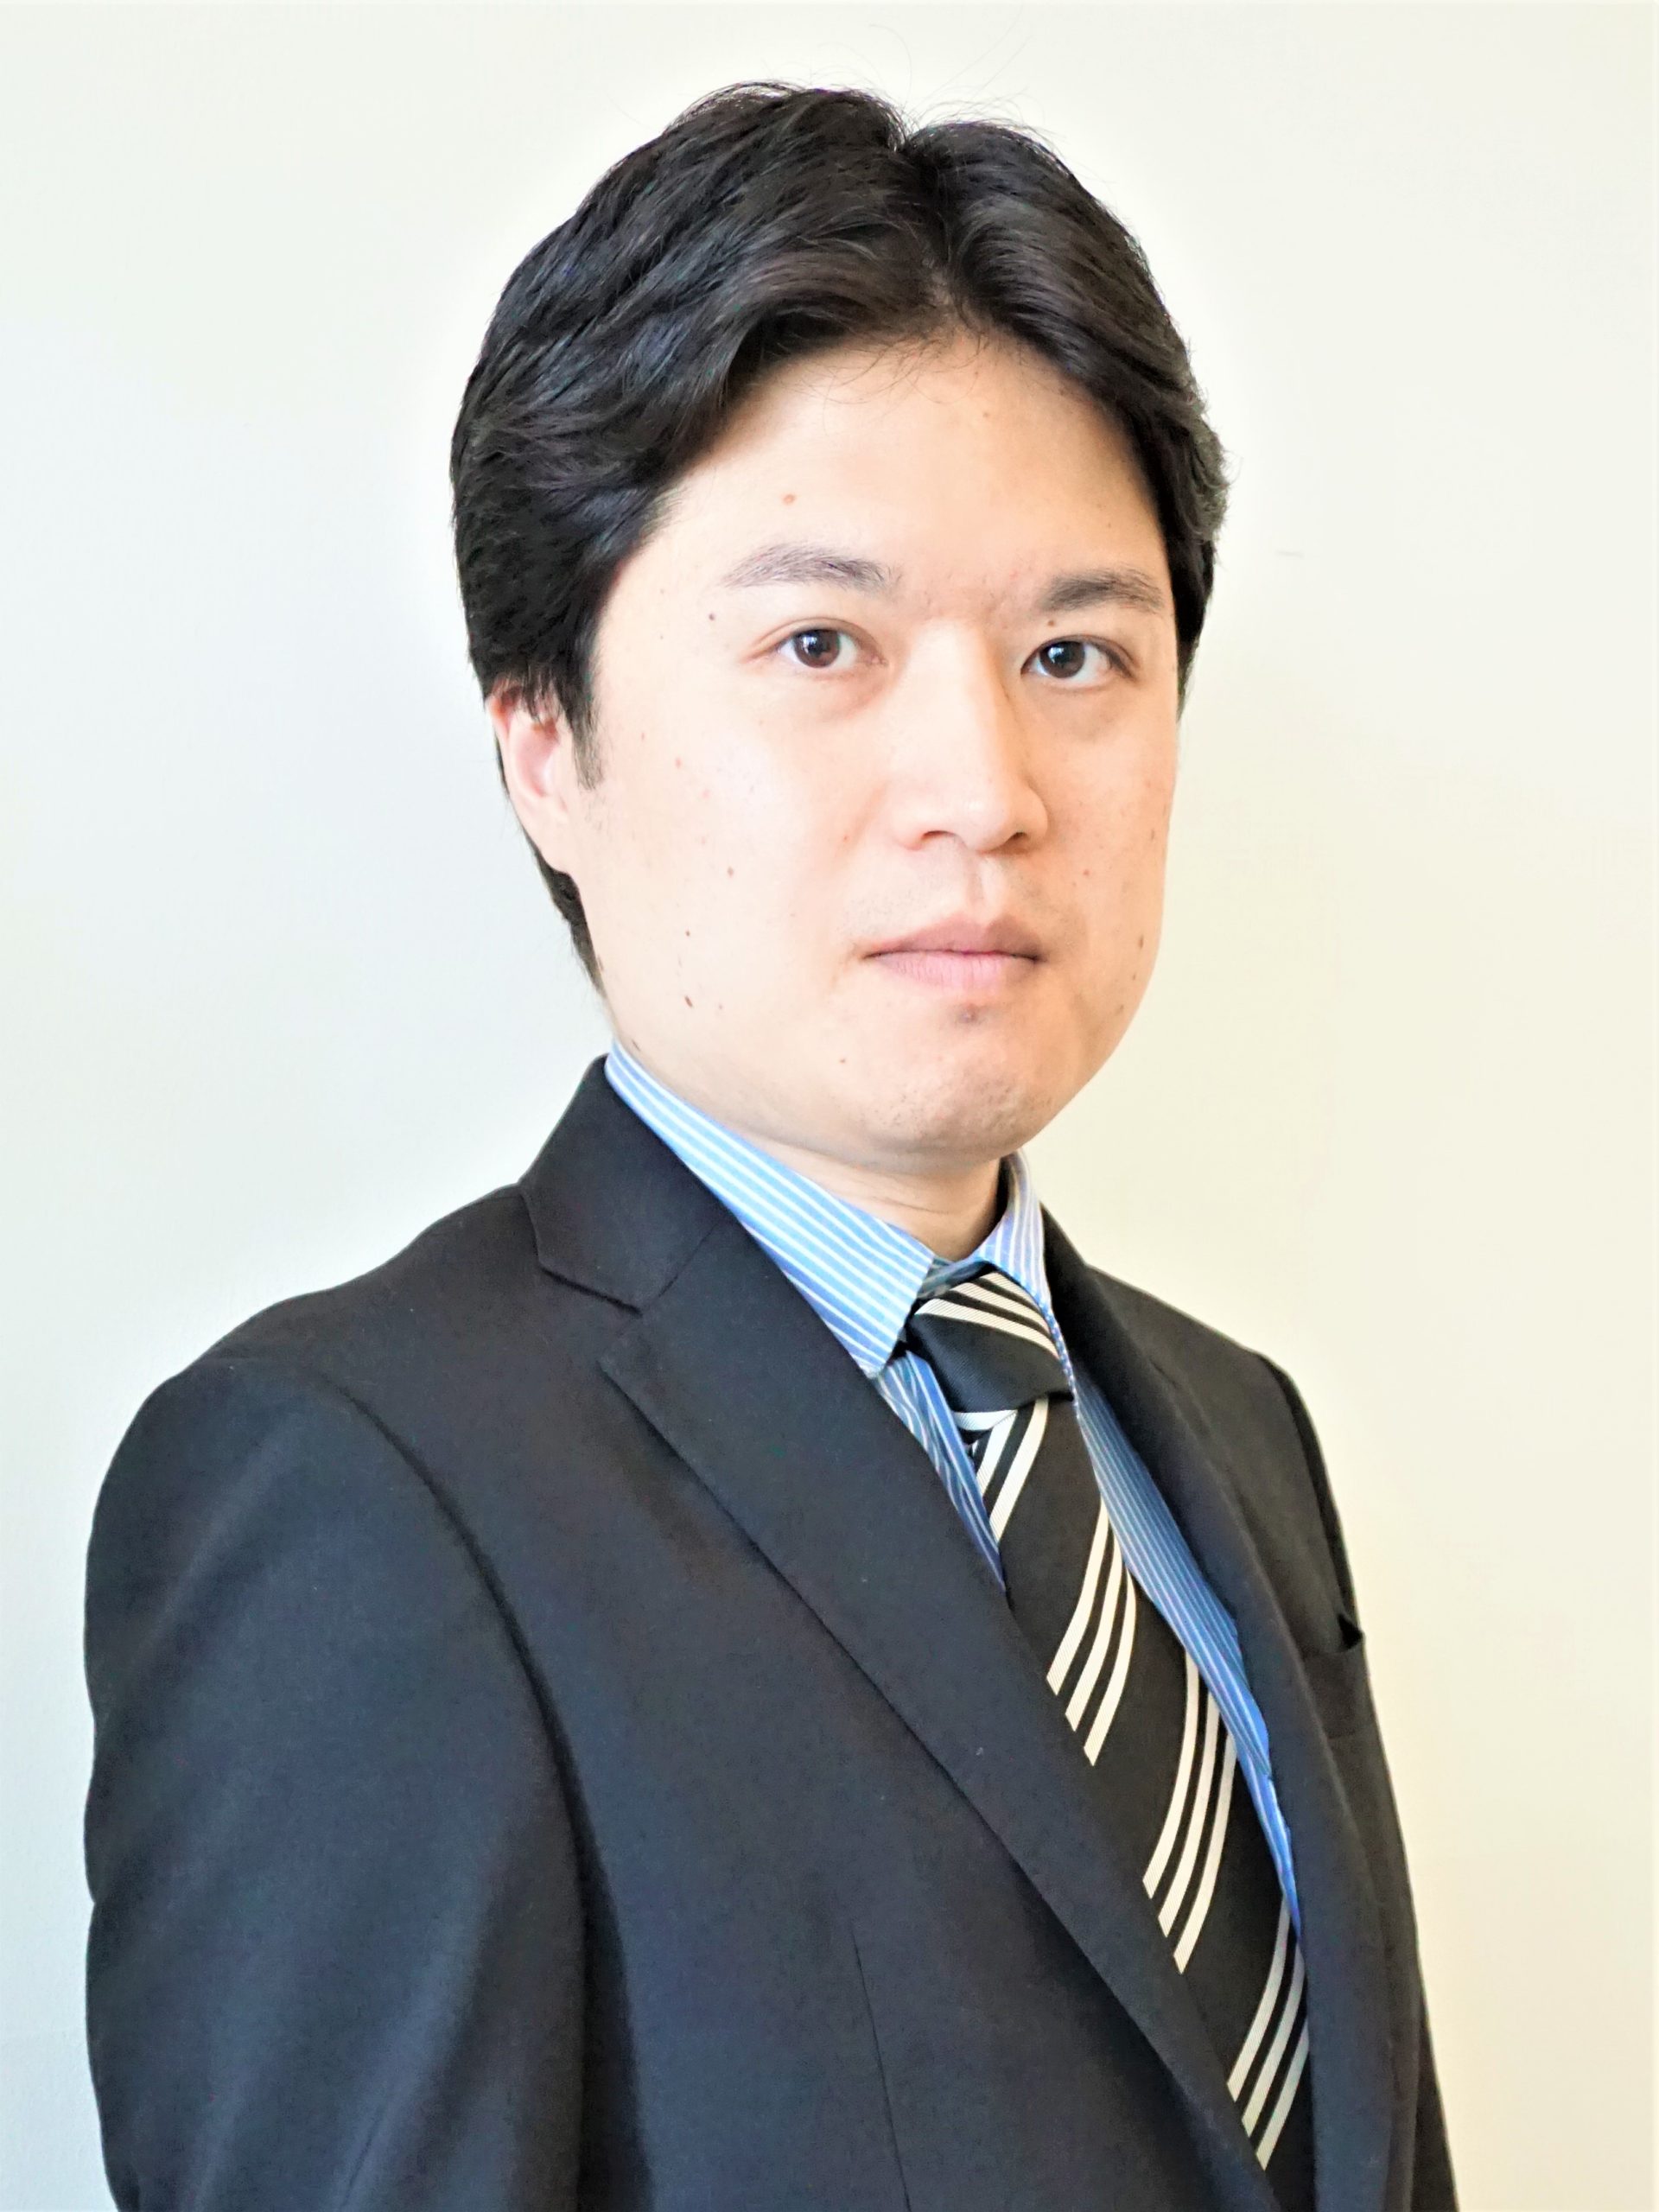 塚田 恒平 マネージャー シンガポール国公認会計士